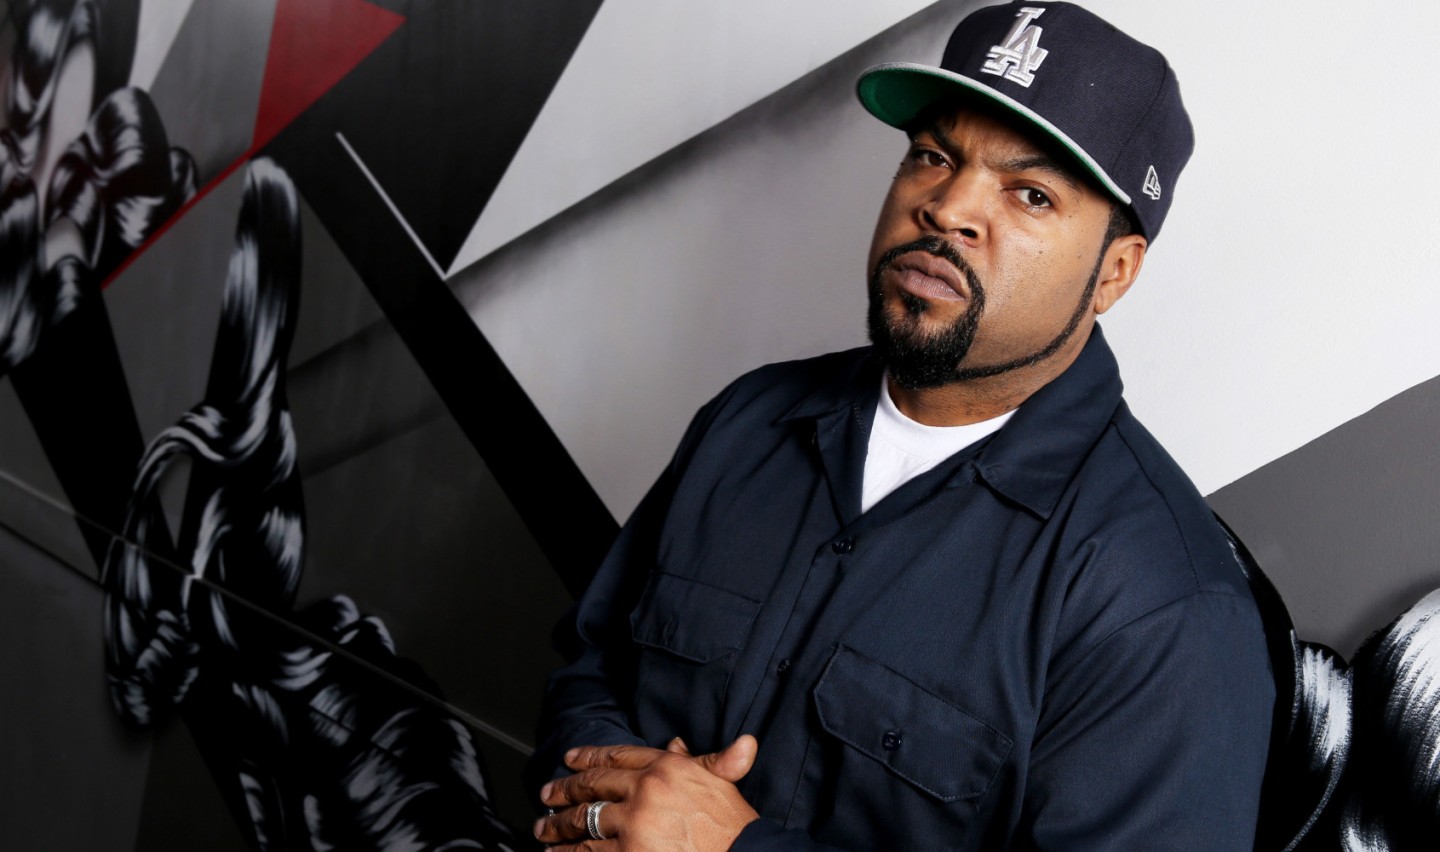 Cube feat. Ice Cube. Ice Cube рэпер. Американские реперы список с фото черные.